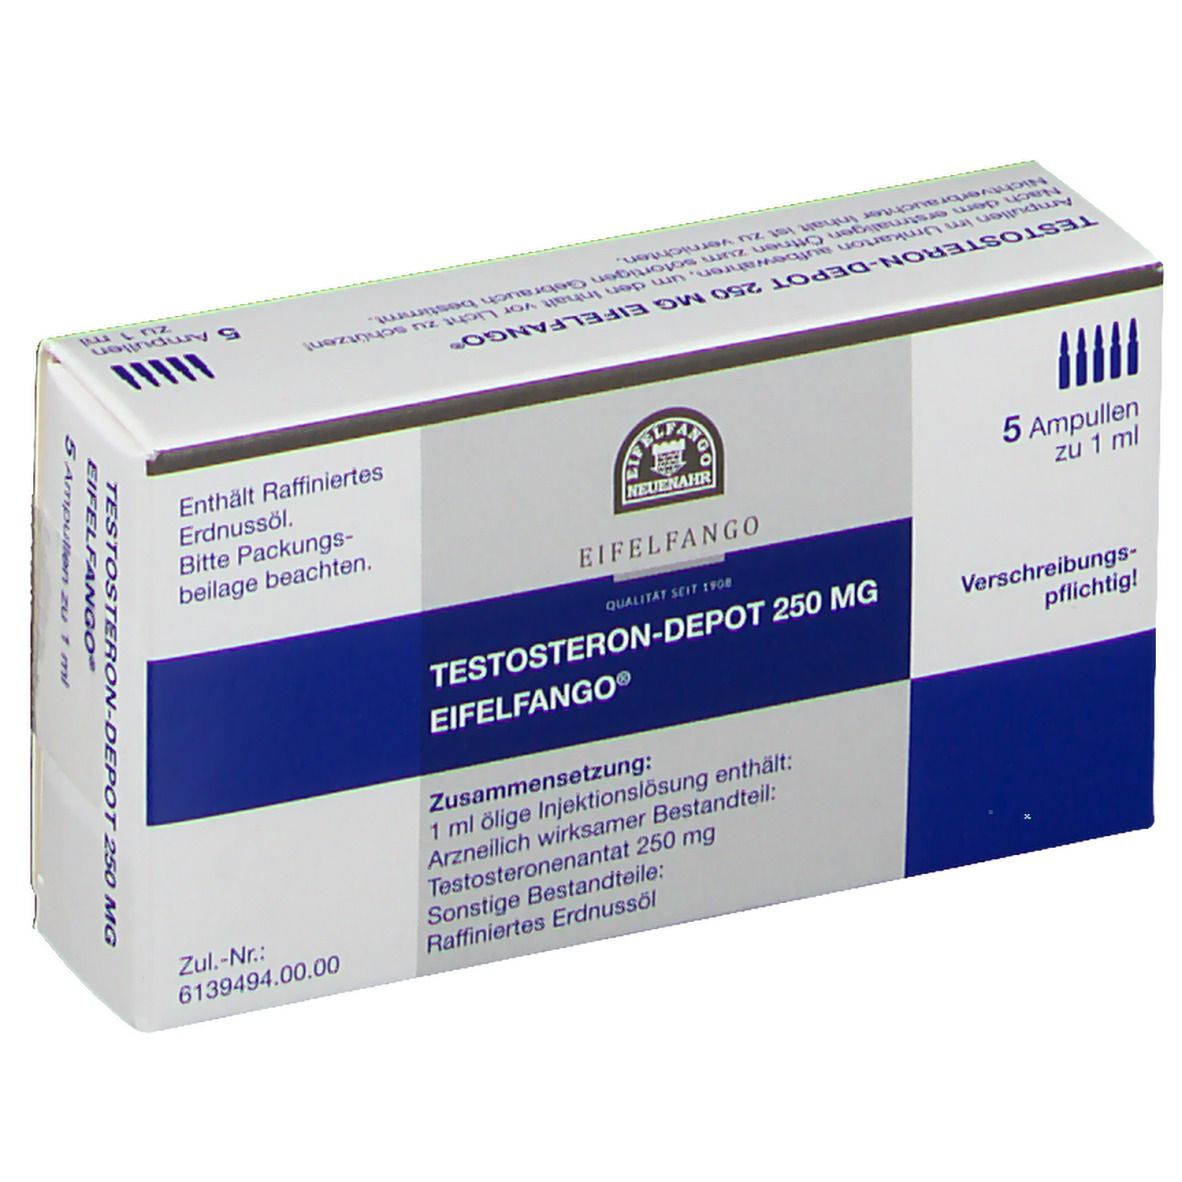 3 Wege, Nandrodex 100 mg Sciroxx | FAC-0342 zu meistern, ohne ins Schwitzen zu geraten